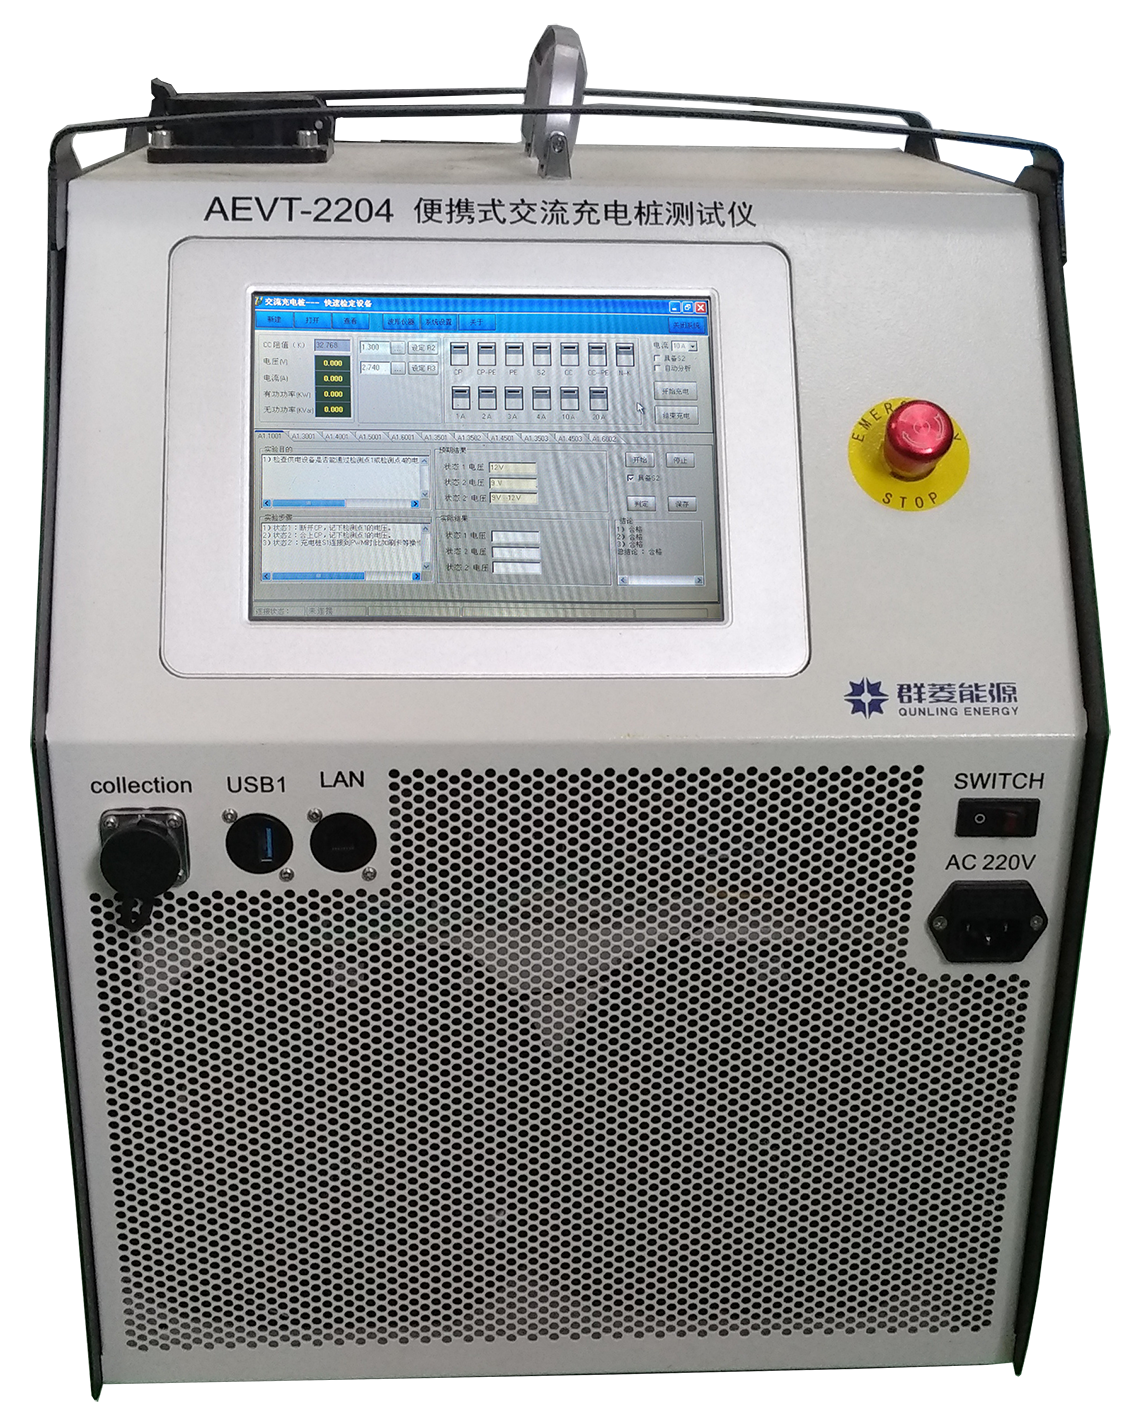 AEVT-2204 便携式交流充电桩测试设备